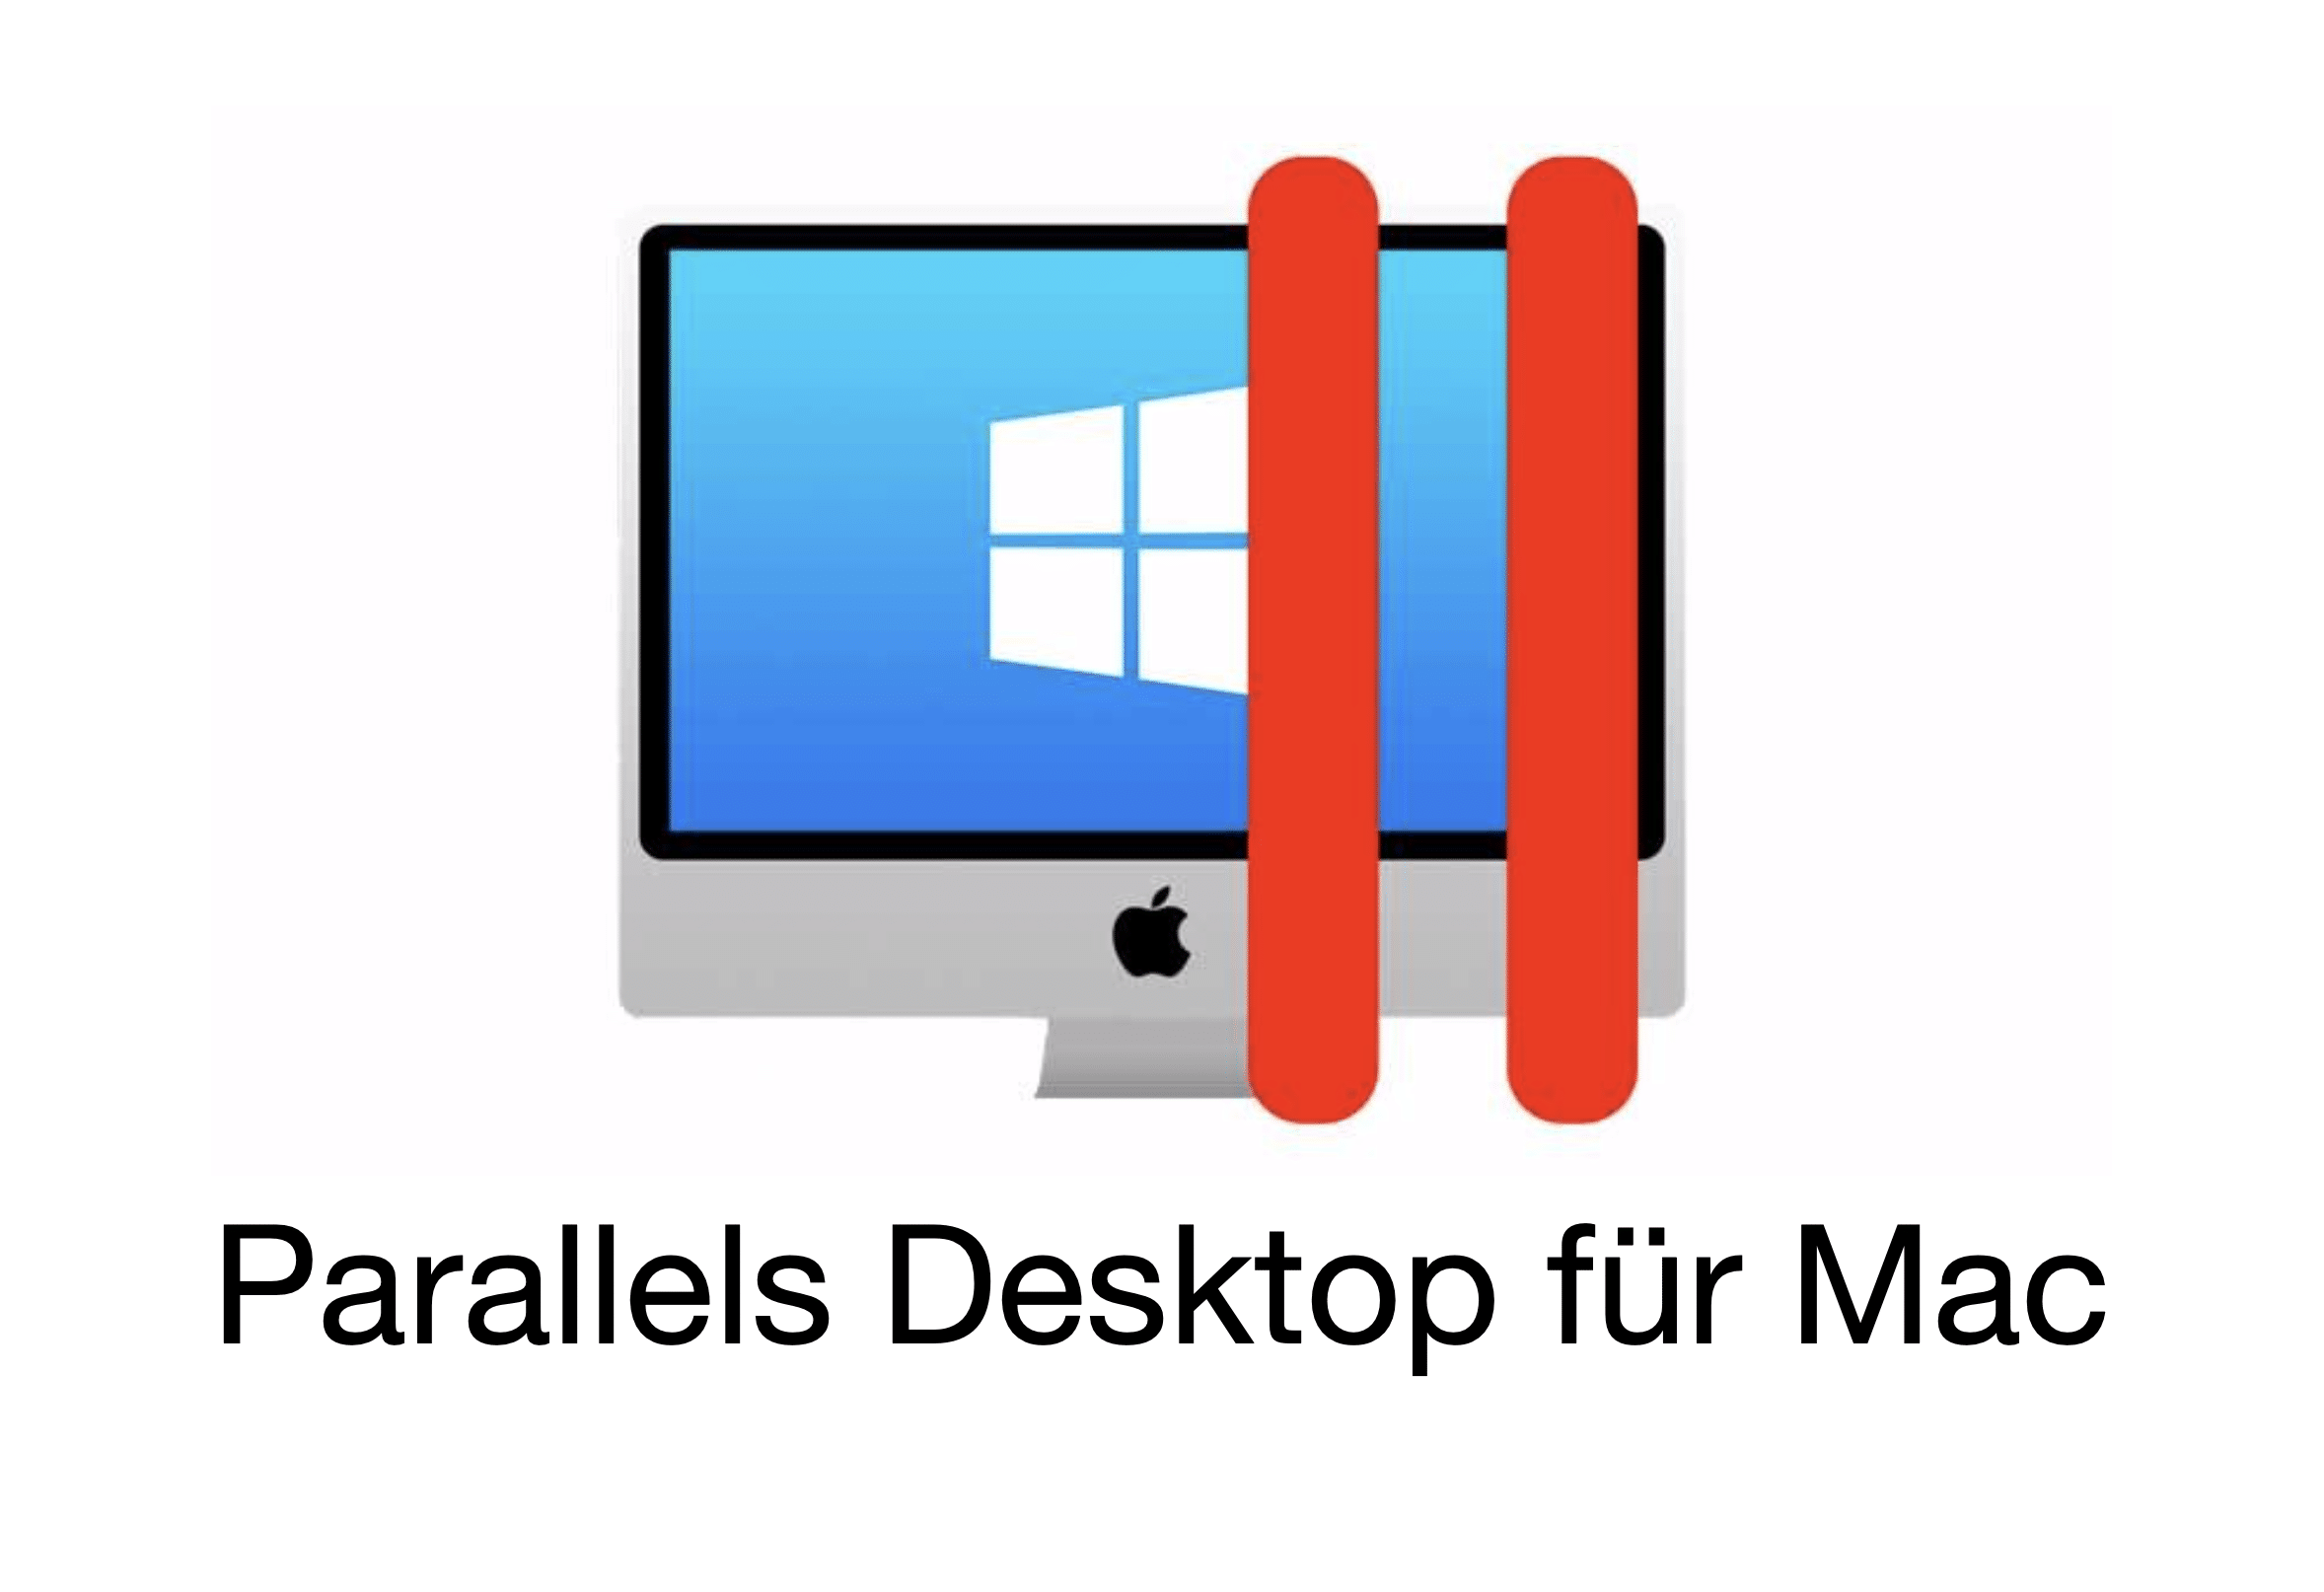 parallels desktop 14 review